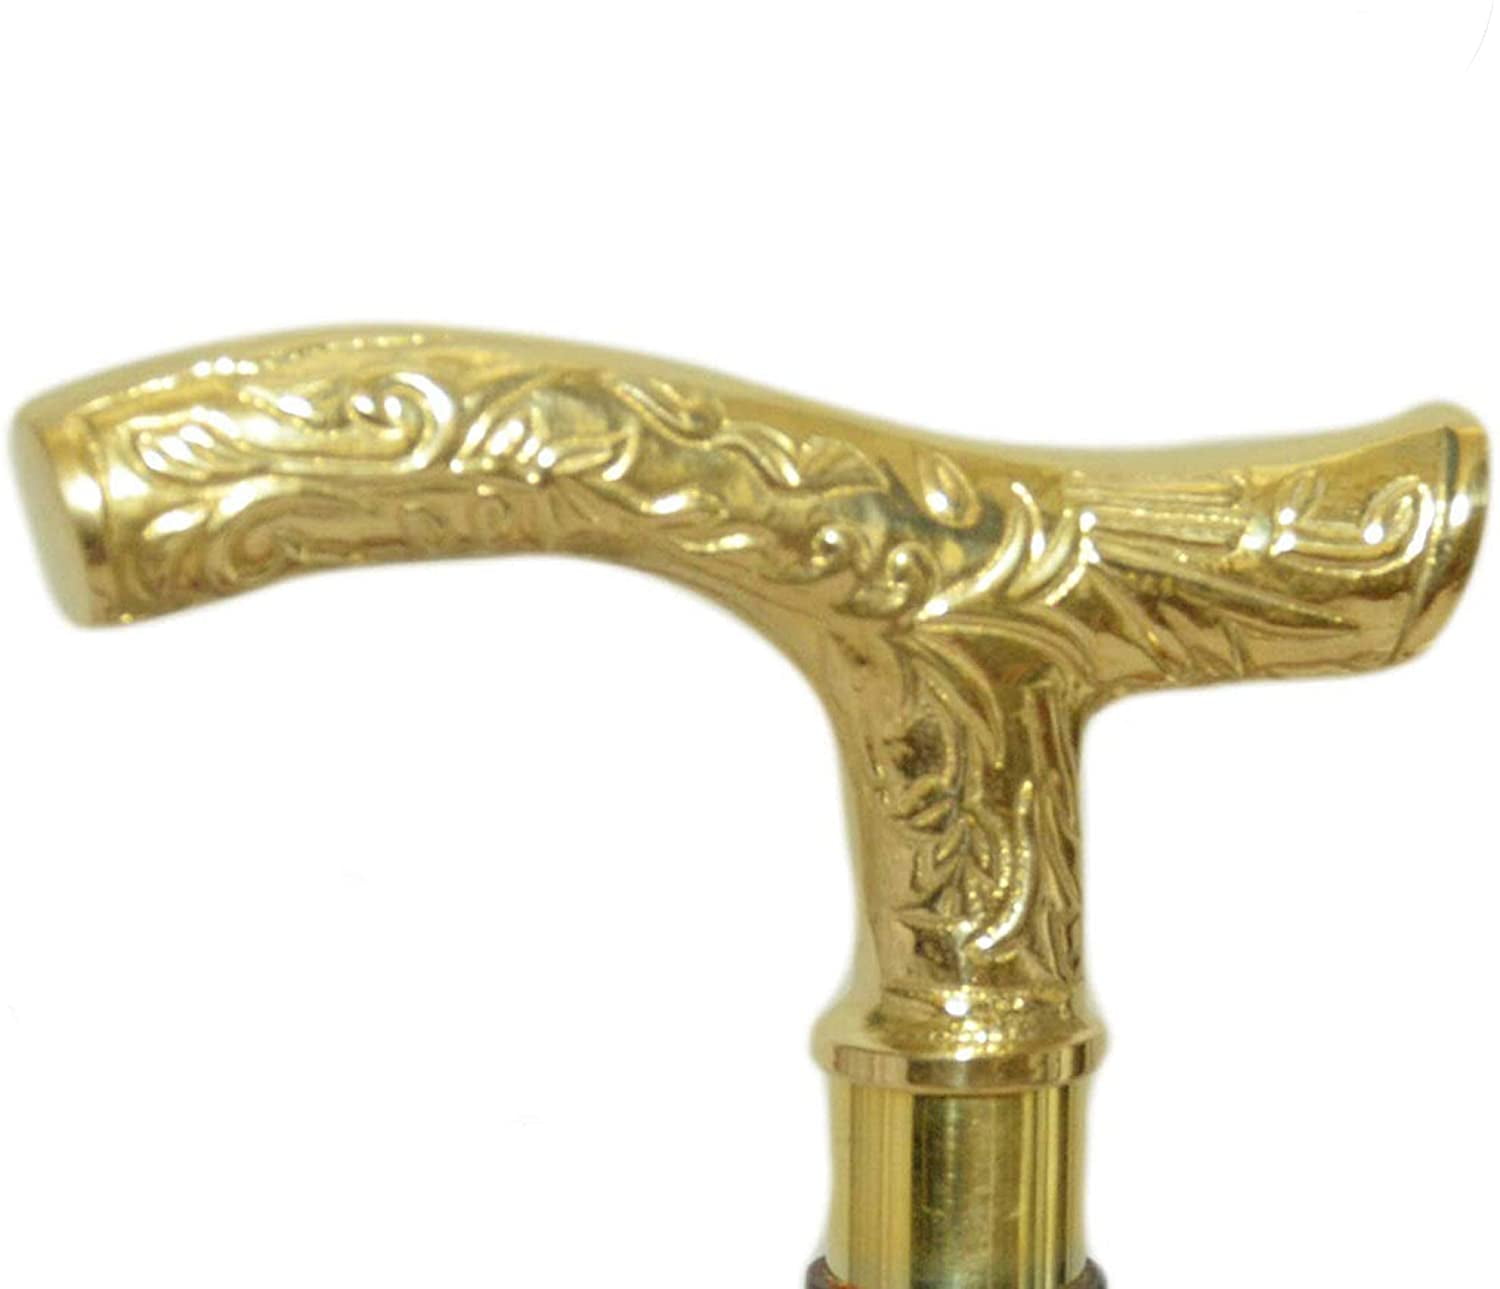 Vinatge Antique Brass LONG Knob Design Handle Victorian For Walking Stick /cane 